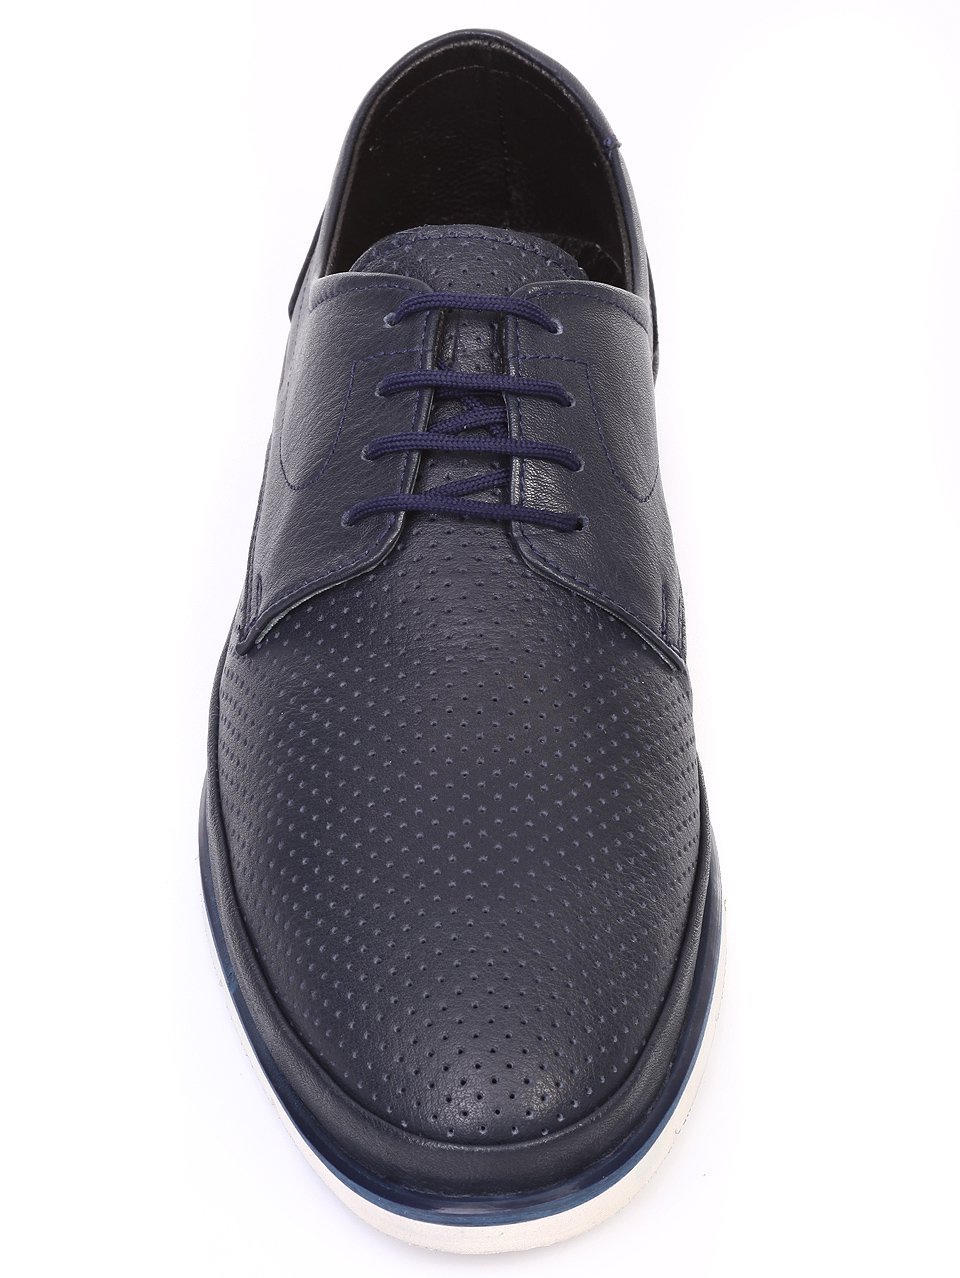 Ежедневни мъжки обувки от естествена кожа в синьо 7AT-18515 navy